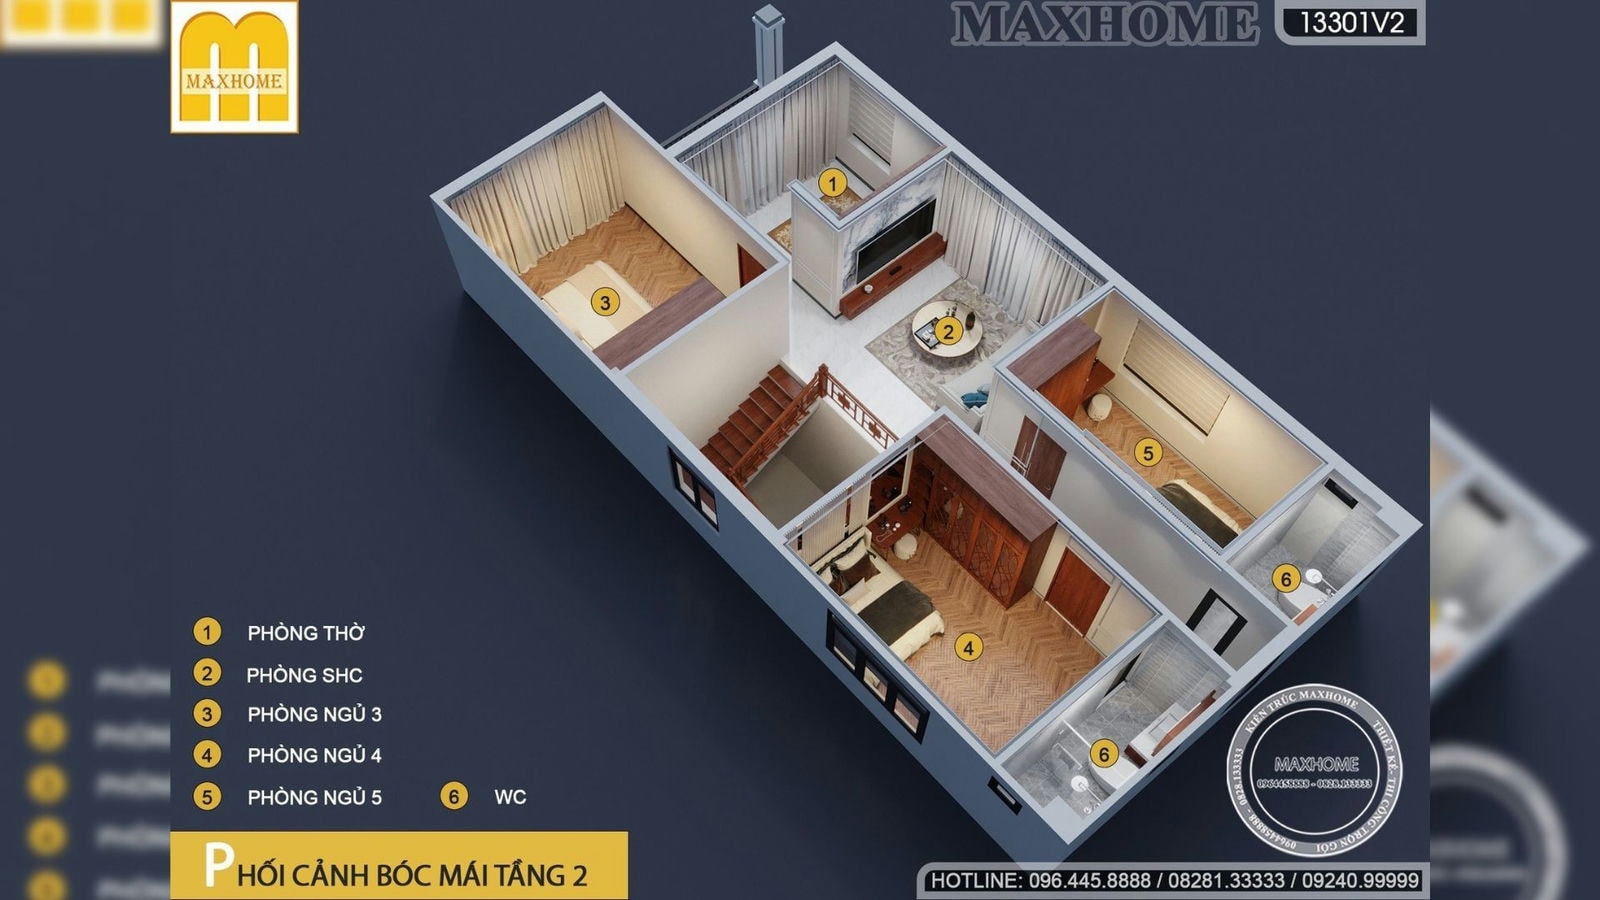 Maxhome thiết kế thi công trọn gói cho nhà 2 tầng mái Nhật hot | MH01682